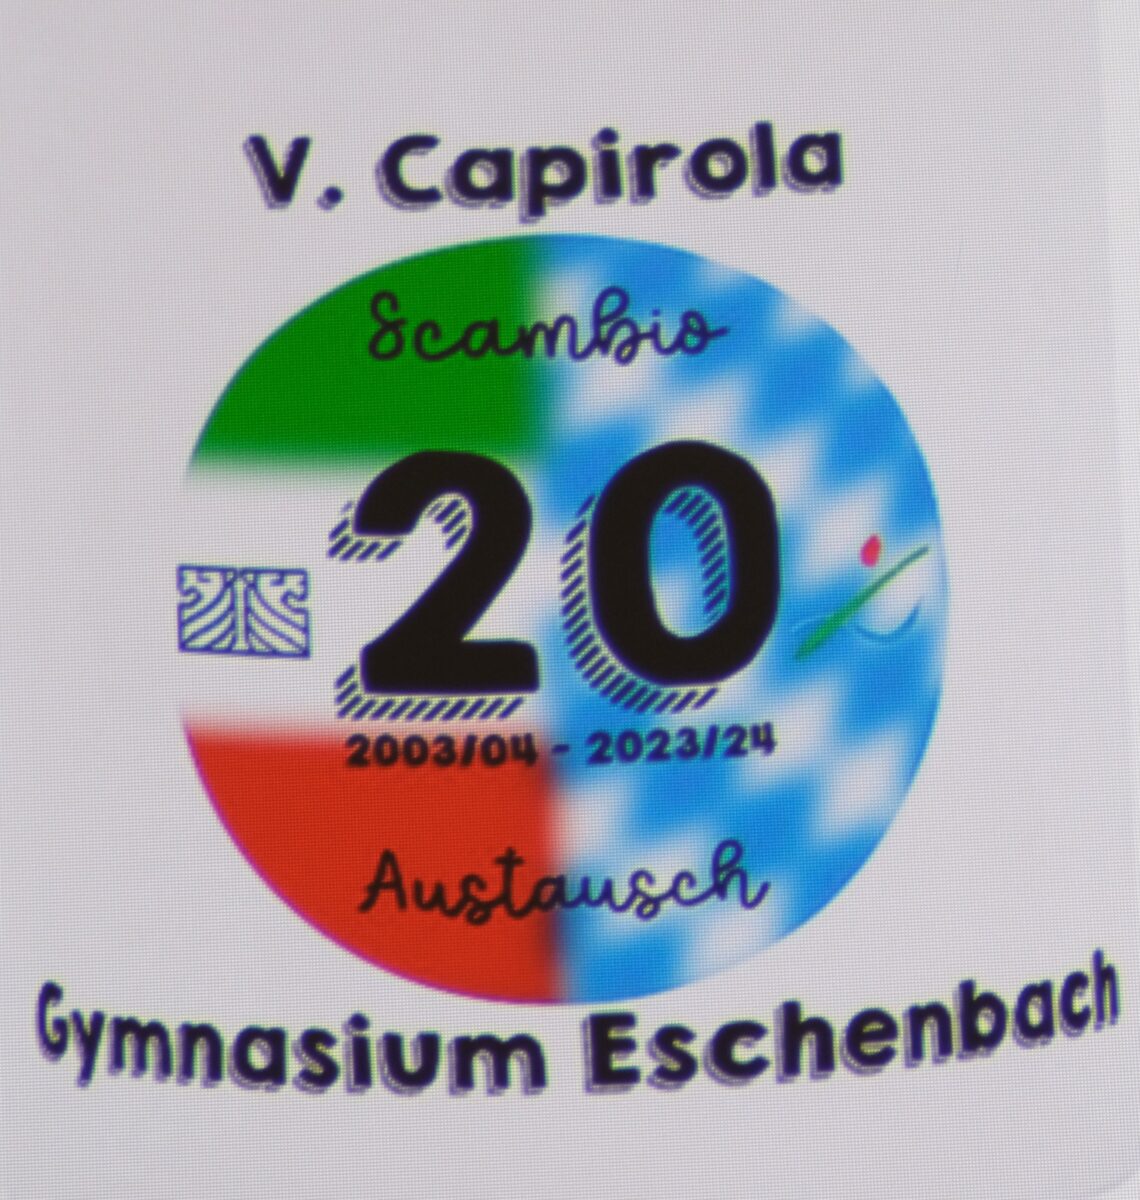 Auf den Erinnerungstassen ist das Logo der beiden Schulen verewigt. Entworfen wurde es von
Nelly Schnödt aus Auerbach, Schülerin der Klasse 10a des Gymnasiums. Foto: Robert Dotzauer

